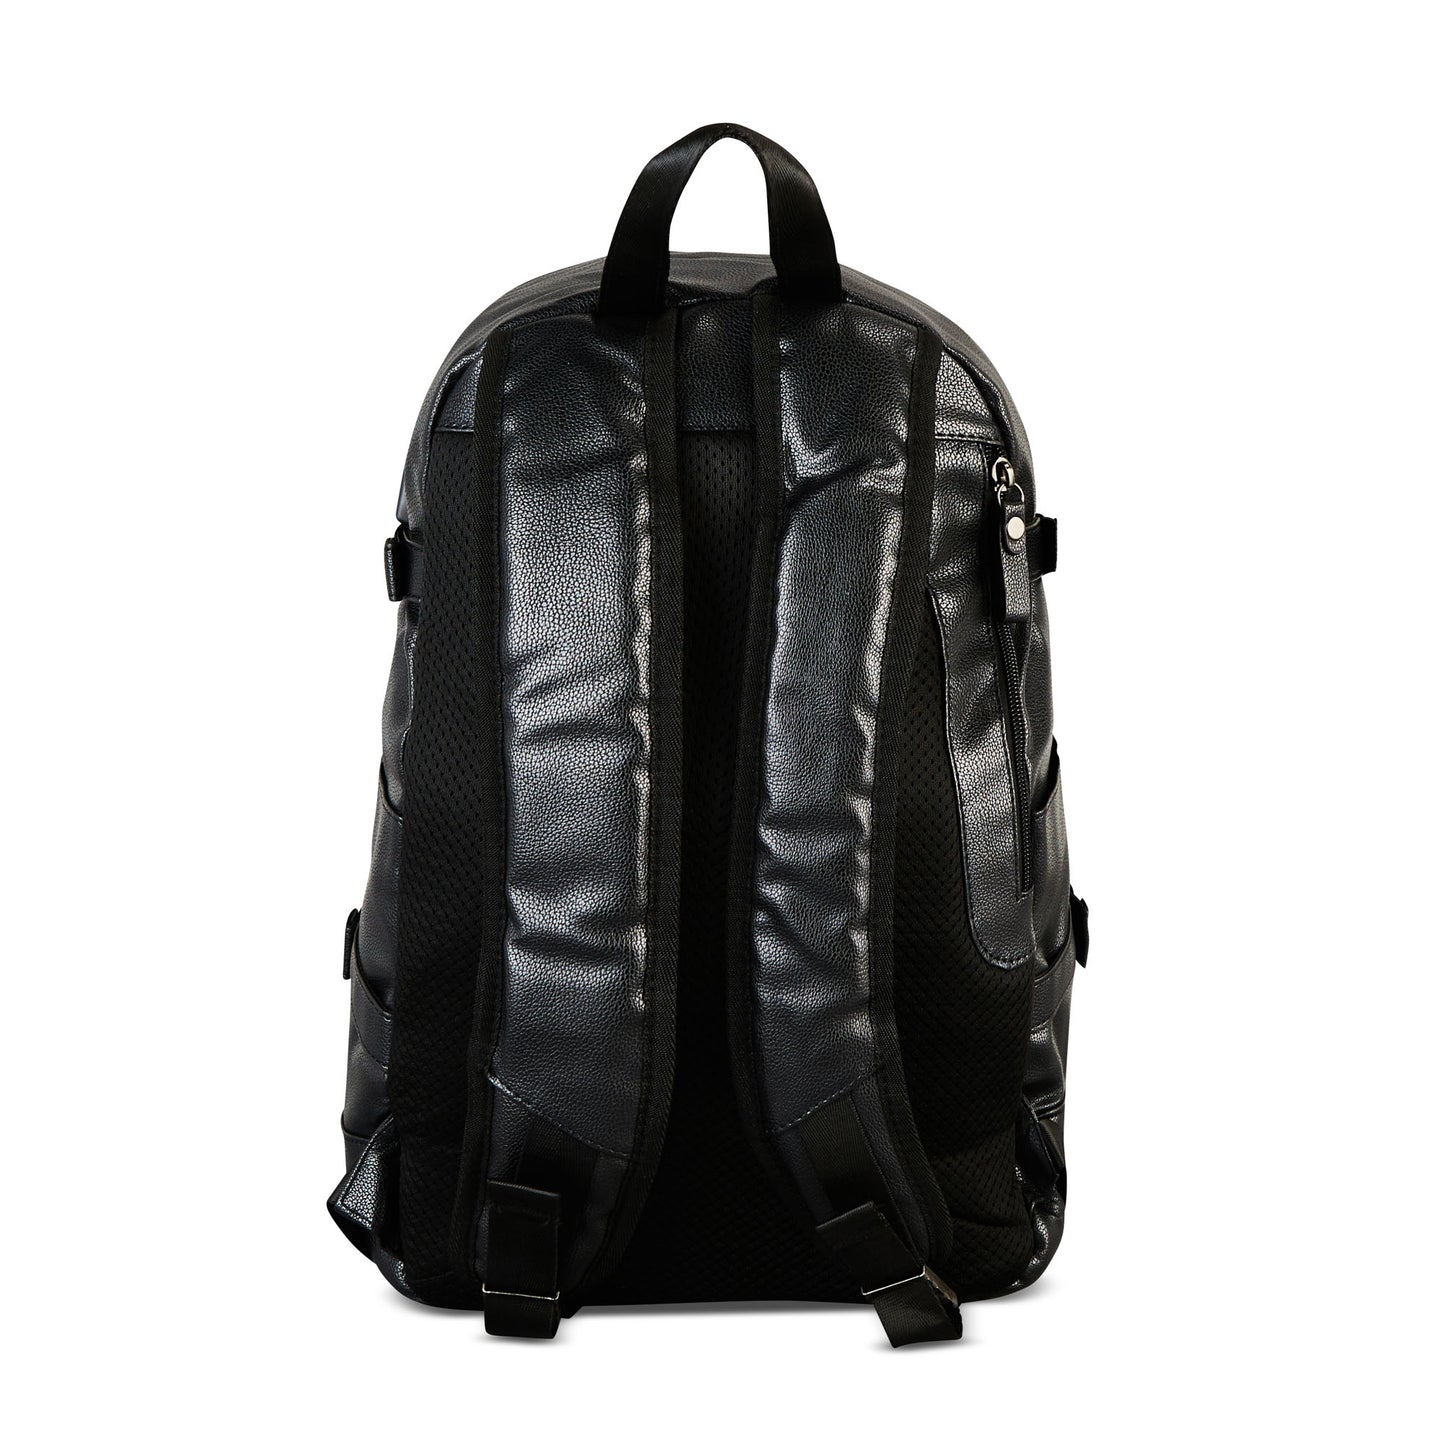 ISUZI ‘The Backpacker’ Bag